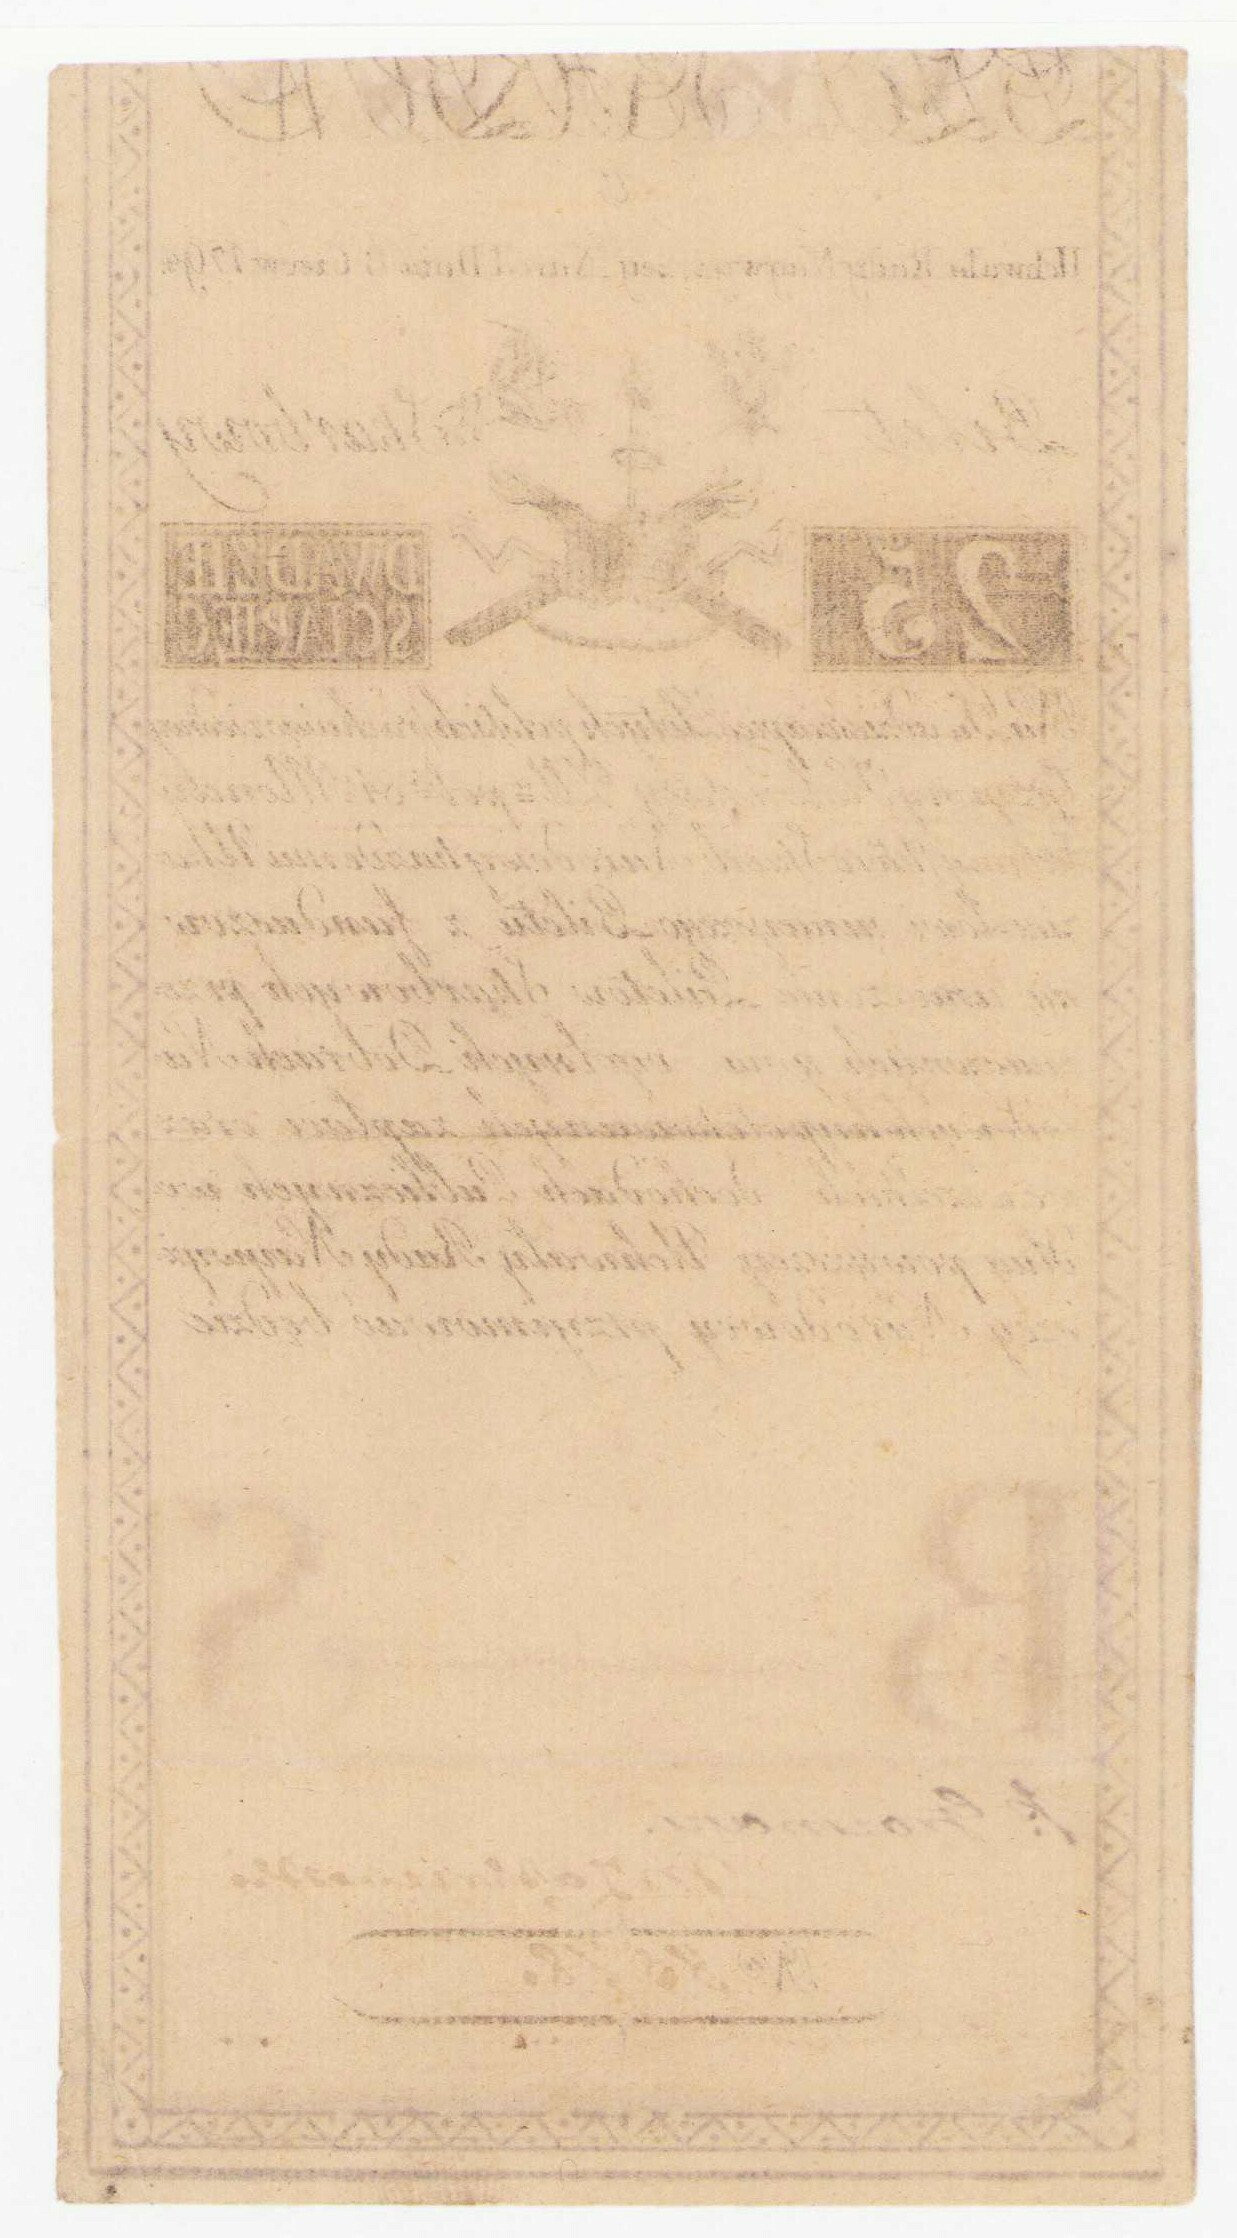 Insurekcja Kościuszkowska. 25 złotych 1794 seria C - Grozmani/Zakrzewski - PIĘKNE